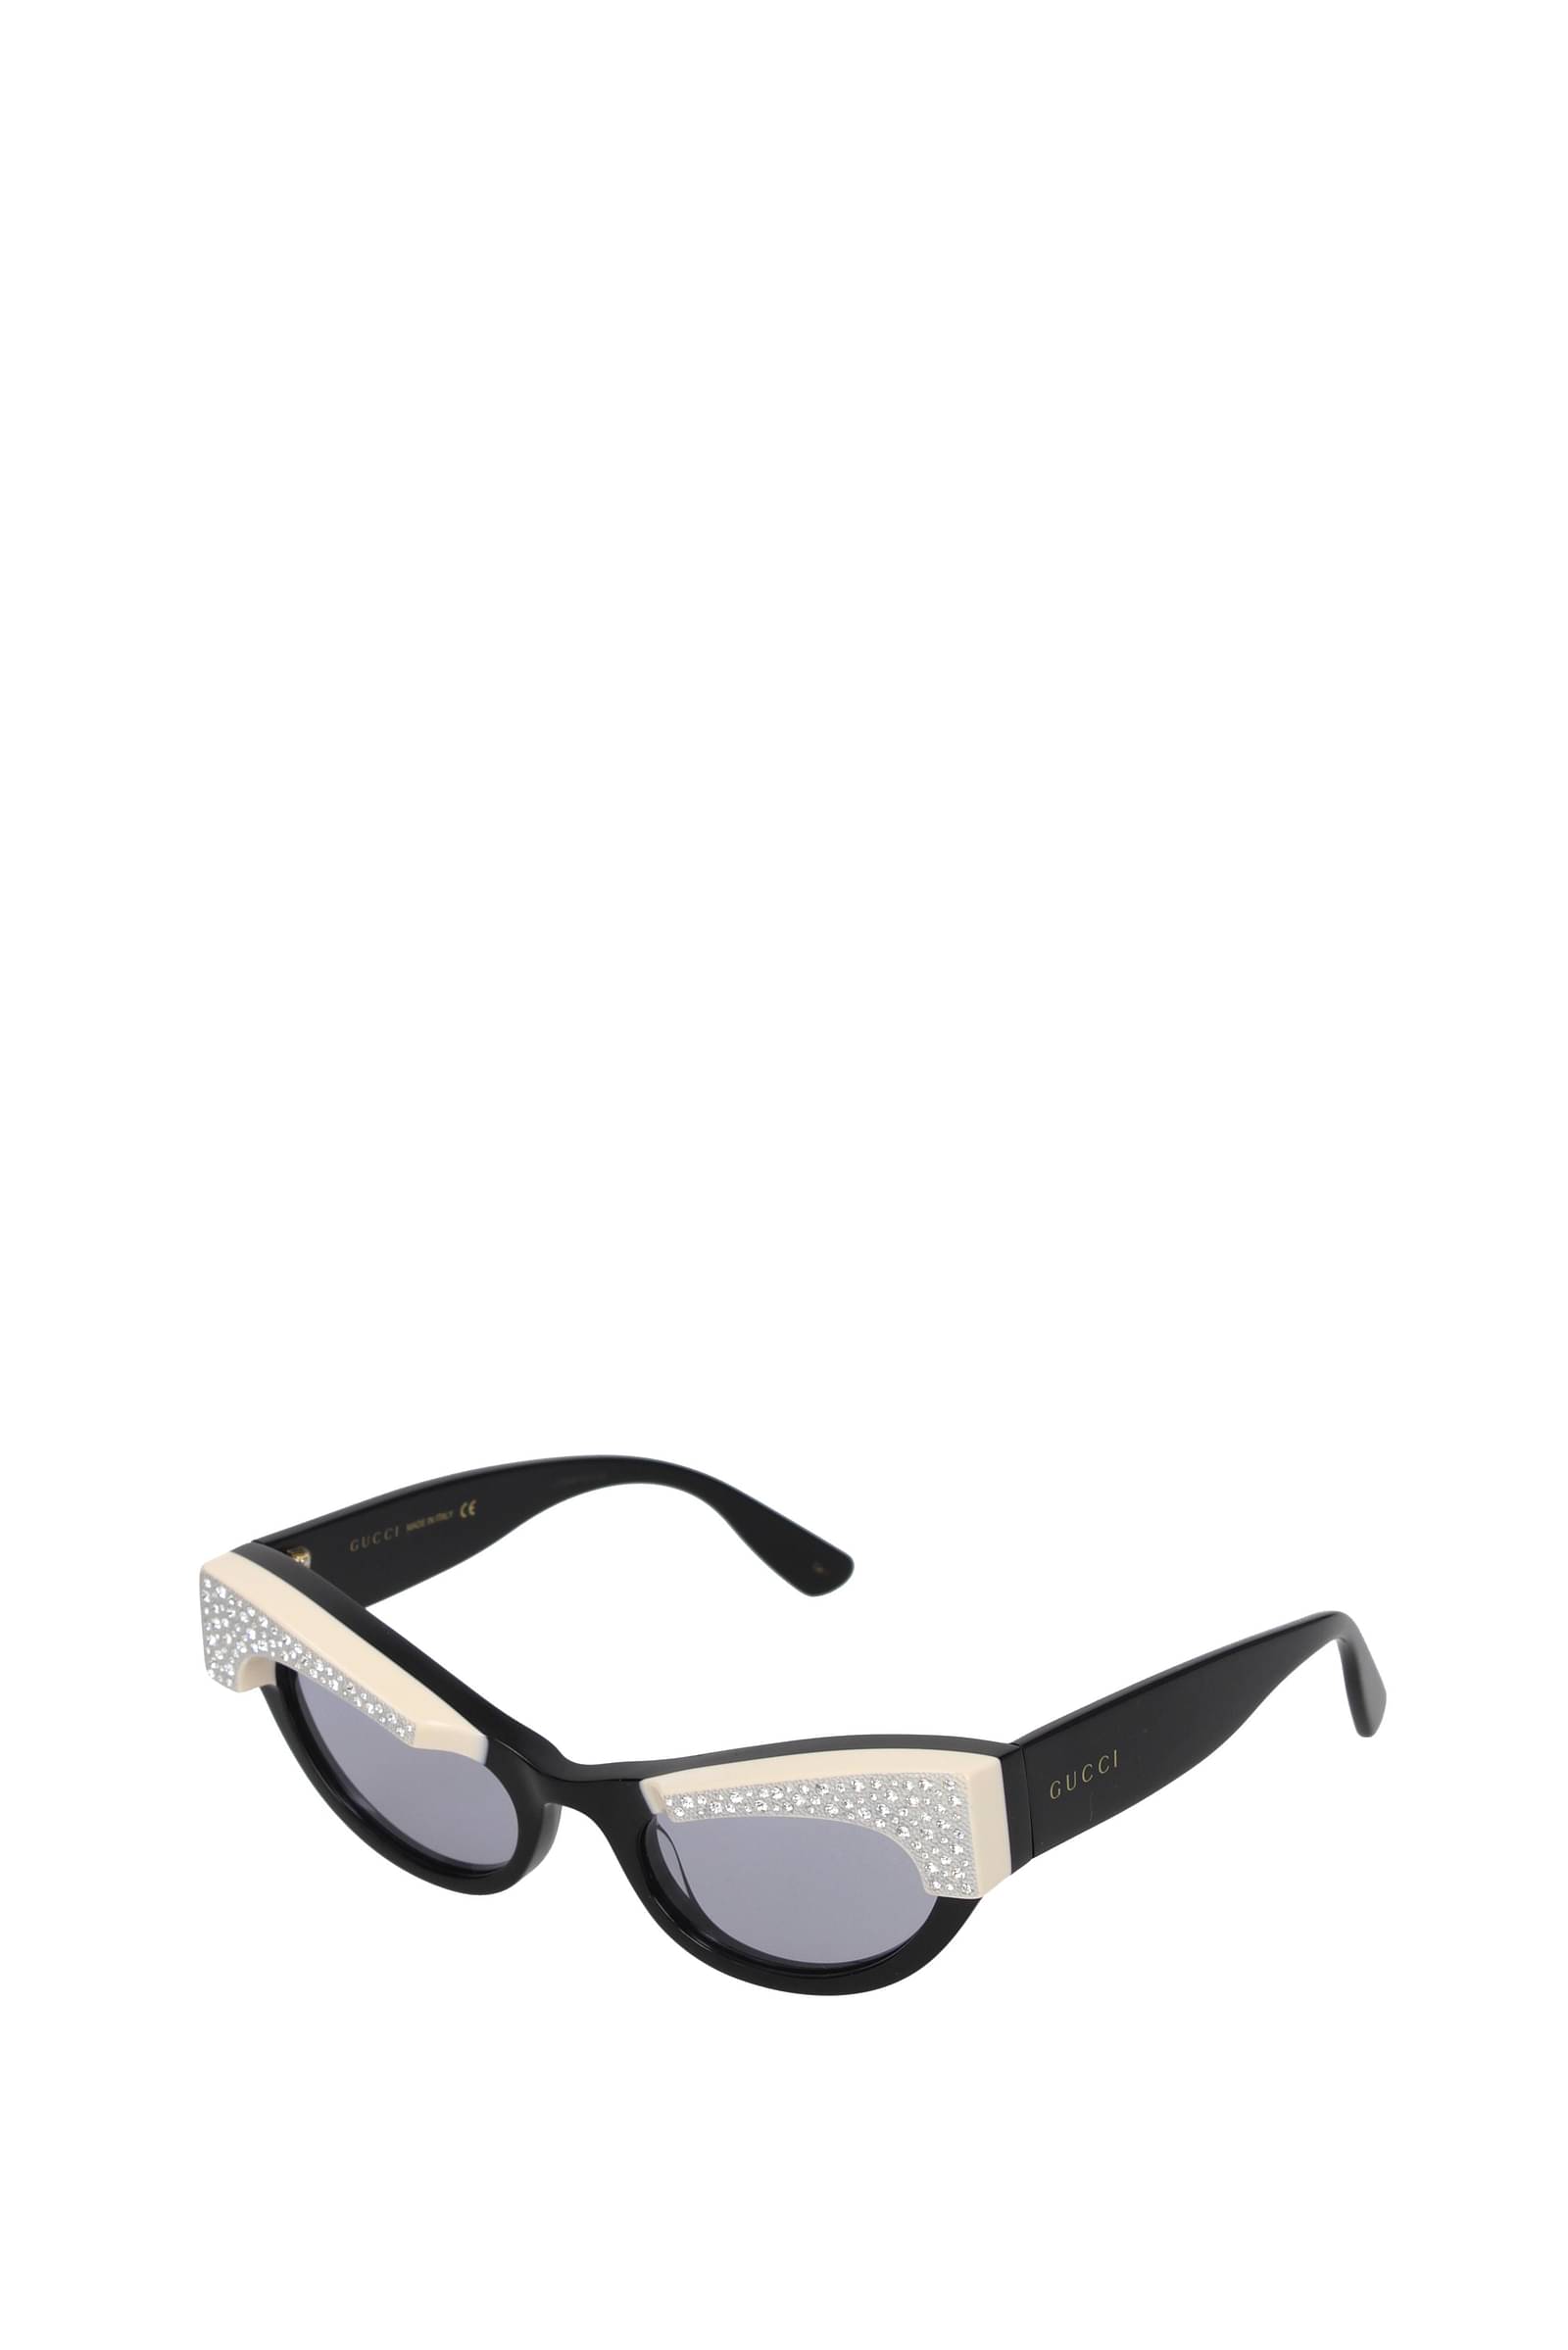 Gucci GG1023 008 54 17 Sunglasses